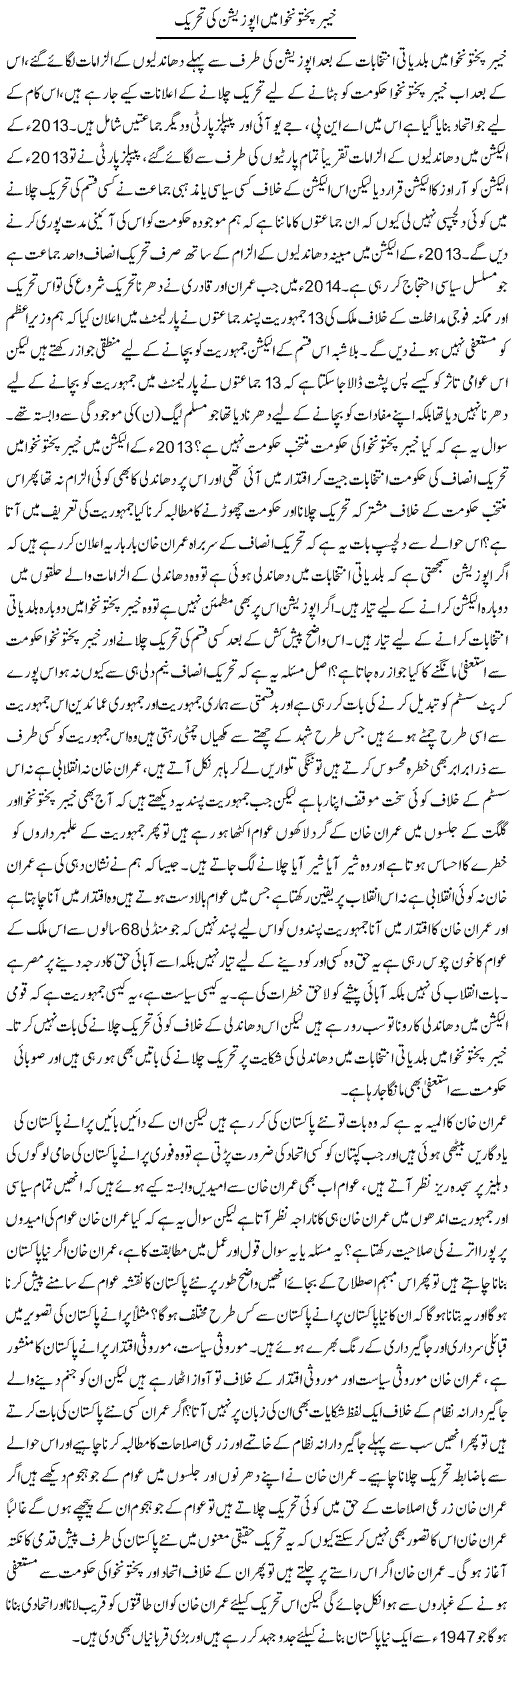 Khyber Pakhtunkhwa Mein Oppostion Ki Tehreek | Zahir Akhter Bedi | Daily Urdu Columns